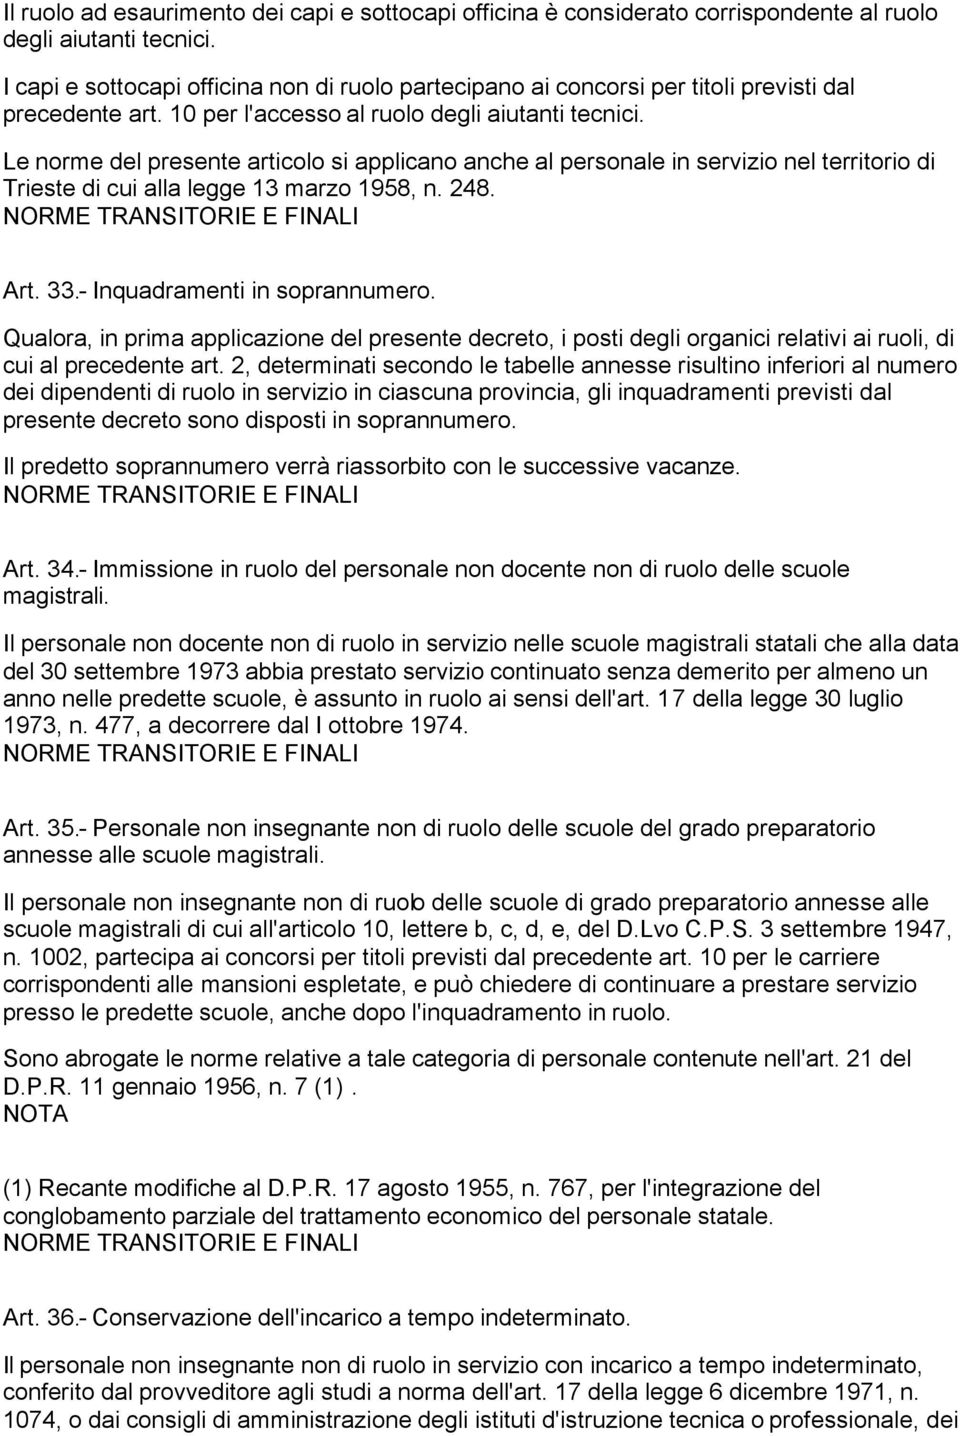 Le norme del presente articolo si applicano anche al personale in servizio nel territorio di Trieste di cui alla legge 13 marzo 1958, n. 248. Art. 33.- Inquadramenti in soprannumero.